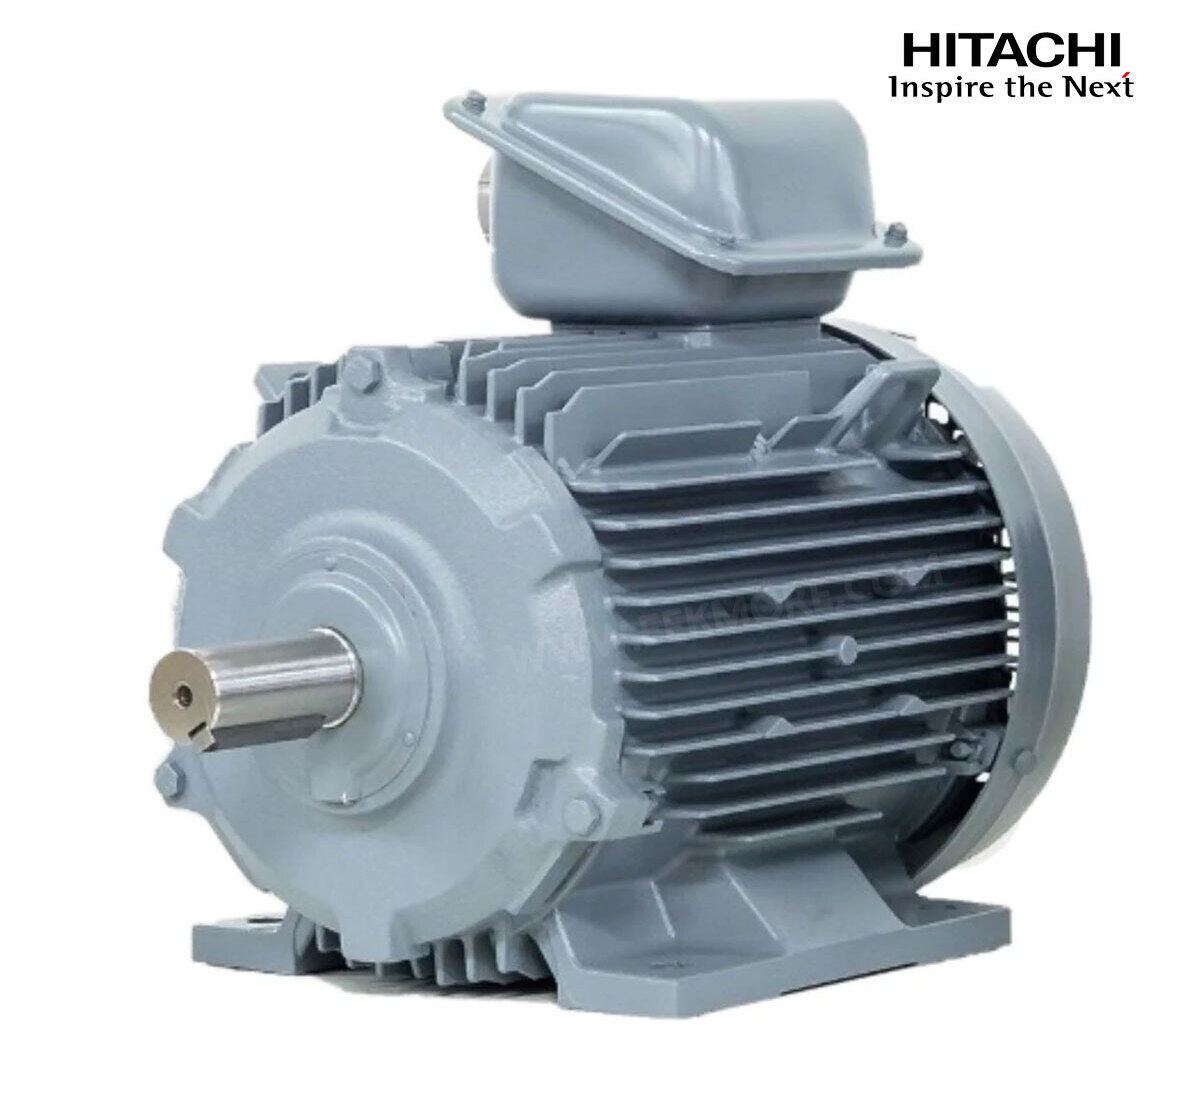 มอเตอร์ฮิตาชิของแท้ 100% HITACHI รุ่น TFO-KK กำลัง 40 แรงม้า (30 KW.) กำลังไฟฟ้าที่ใช้ 380V ความเร็วรอบตัวเปล่า 1450 RPM แกนเพลามอเตอร์ 55 MM.รับประกัน 3 ปี มีของพร้อมจัดส่งทุกวัน